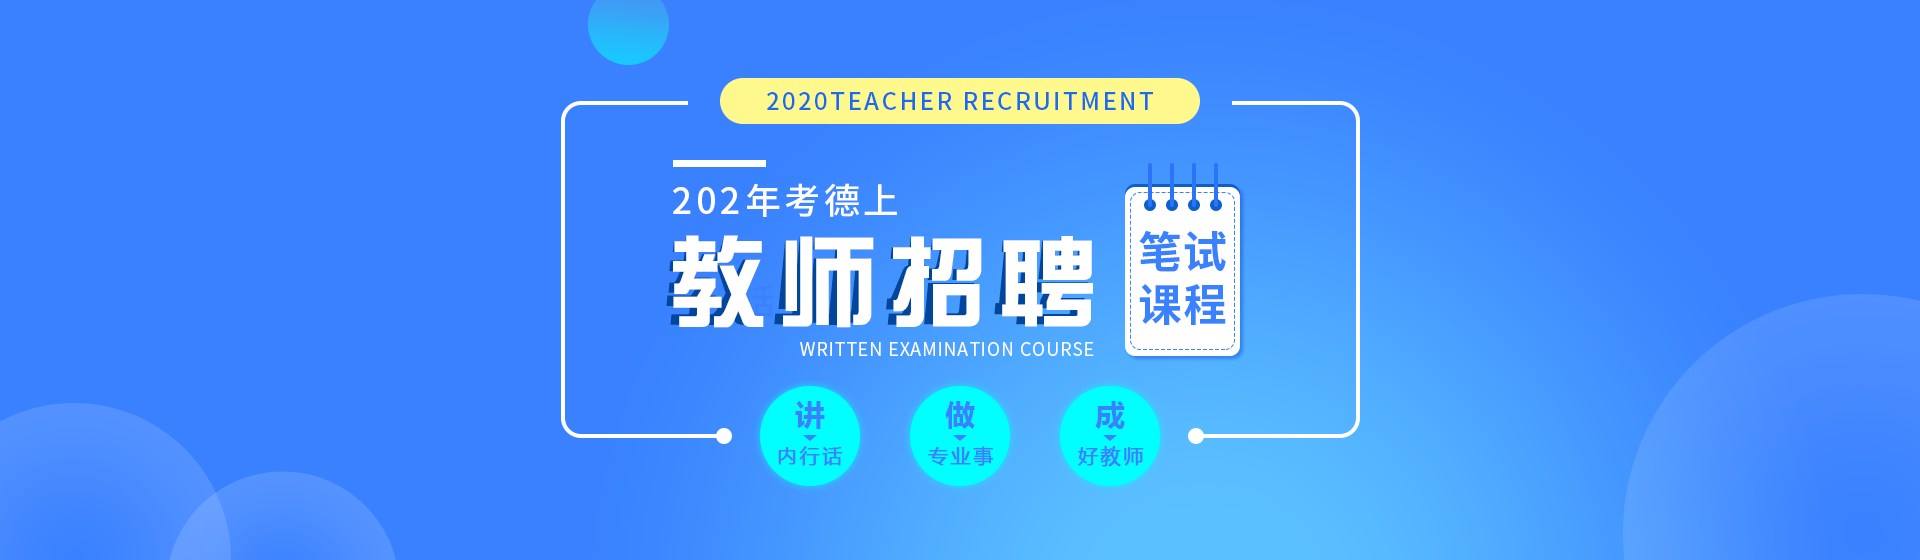 考德上2020年湖南教师招聘辅导课